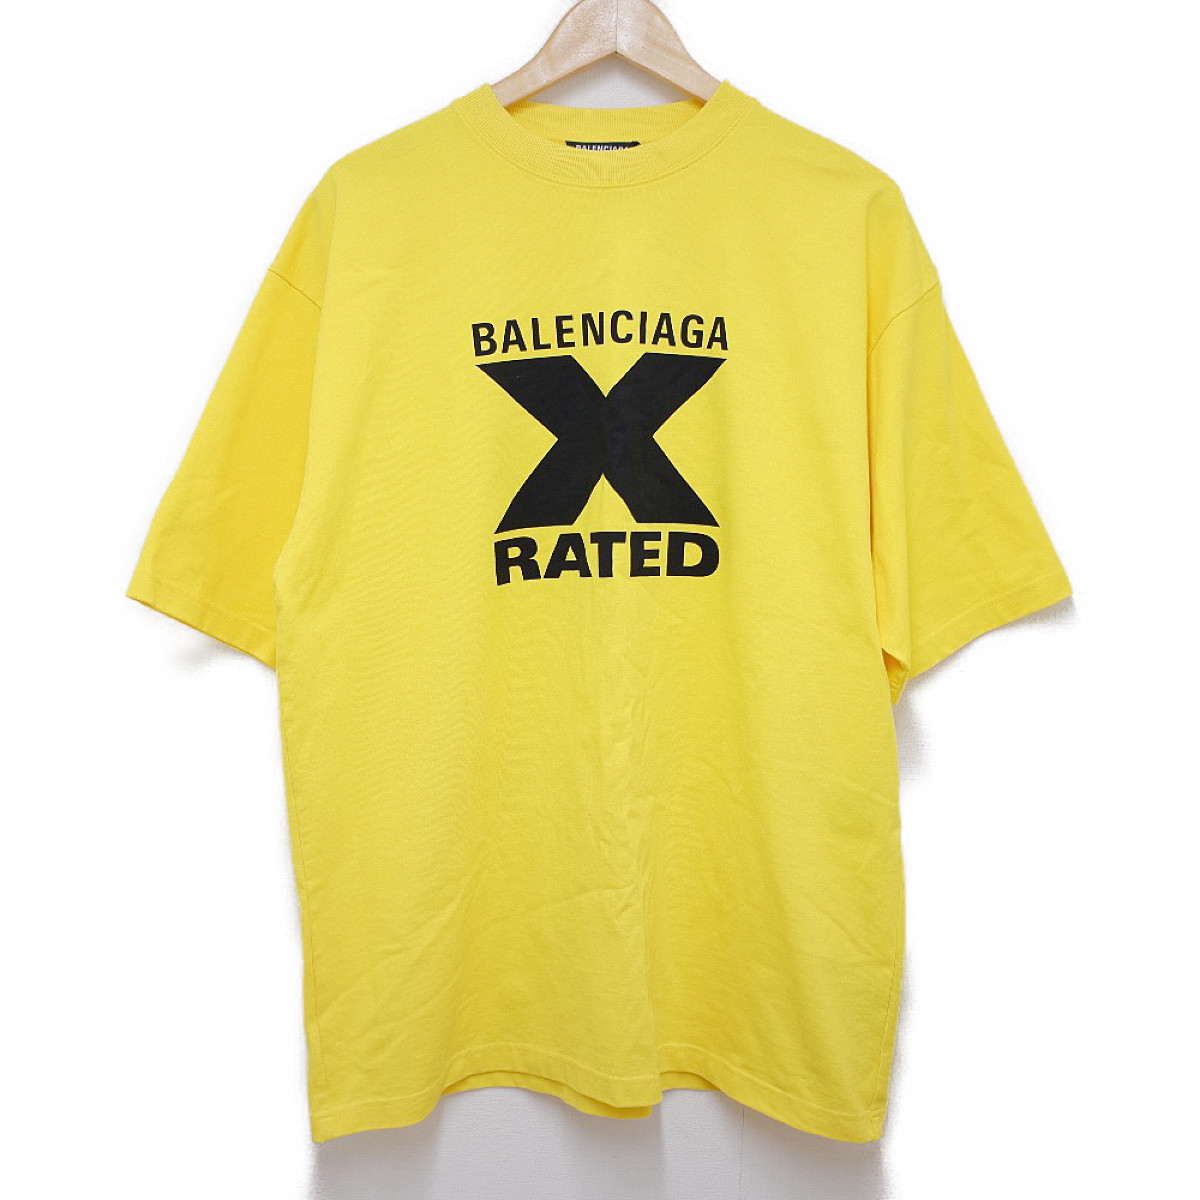 バレンシアガの20年製 620969 イエロー X-RATED LARGE FIT T-SHIRT クルーネックTシャツの買取実績です。